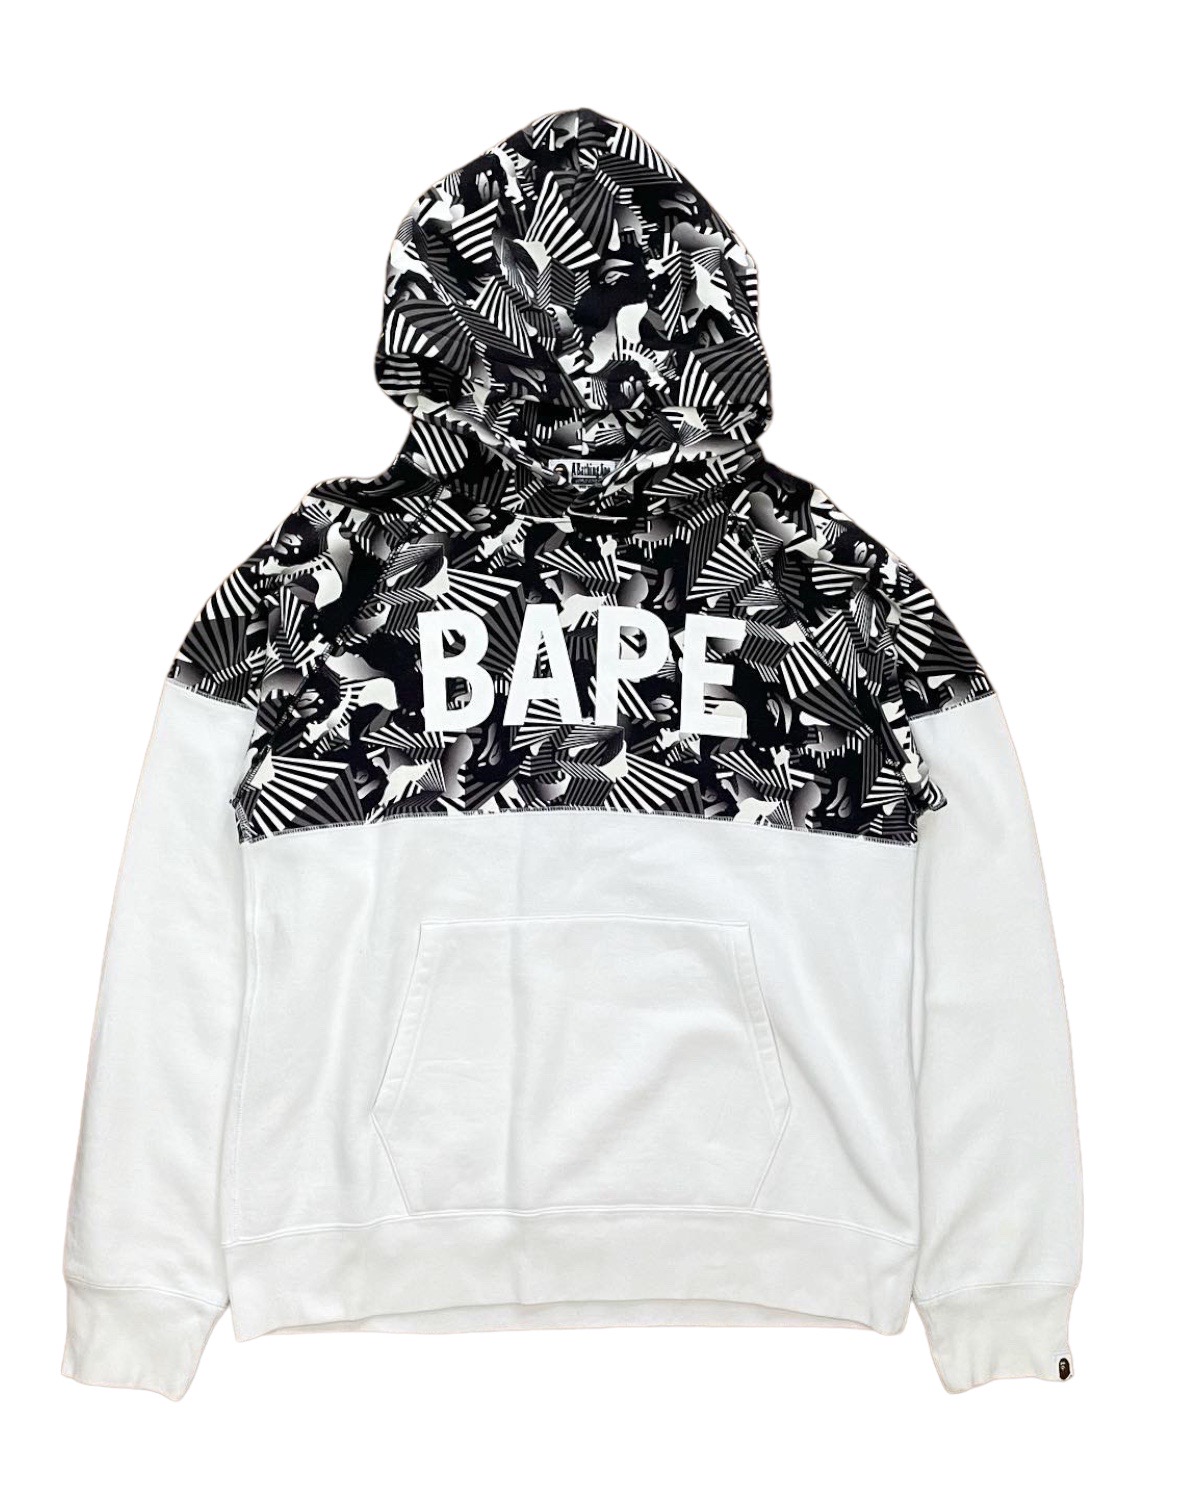 Og y2k era bape japan world gone mad split print pullover hoodie